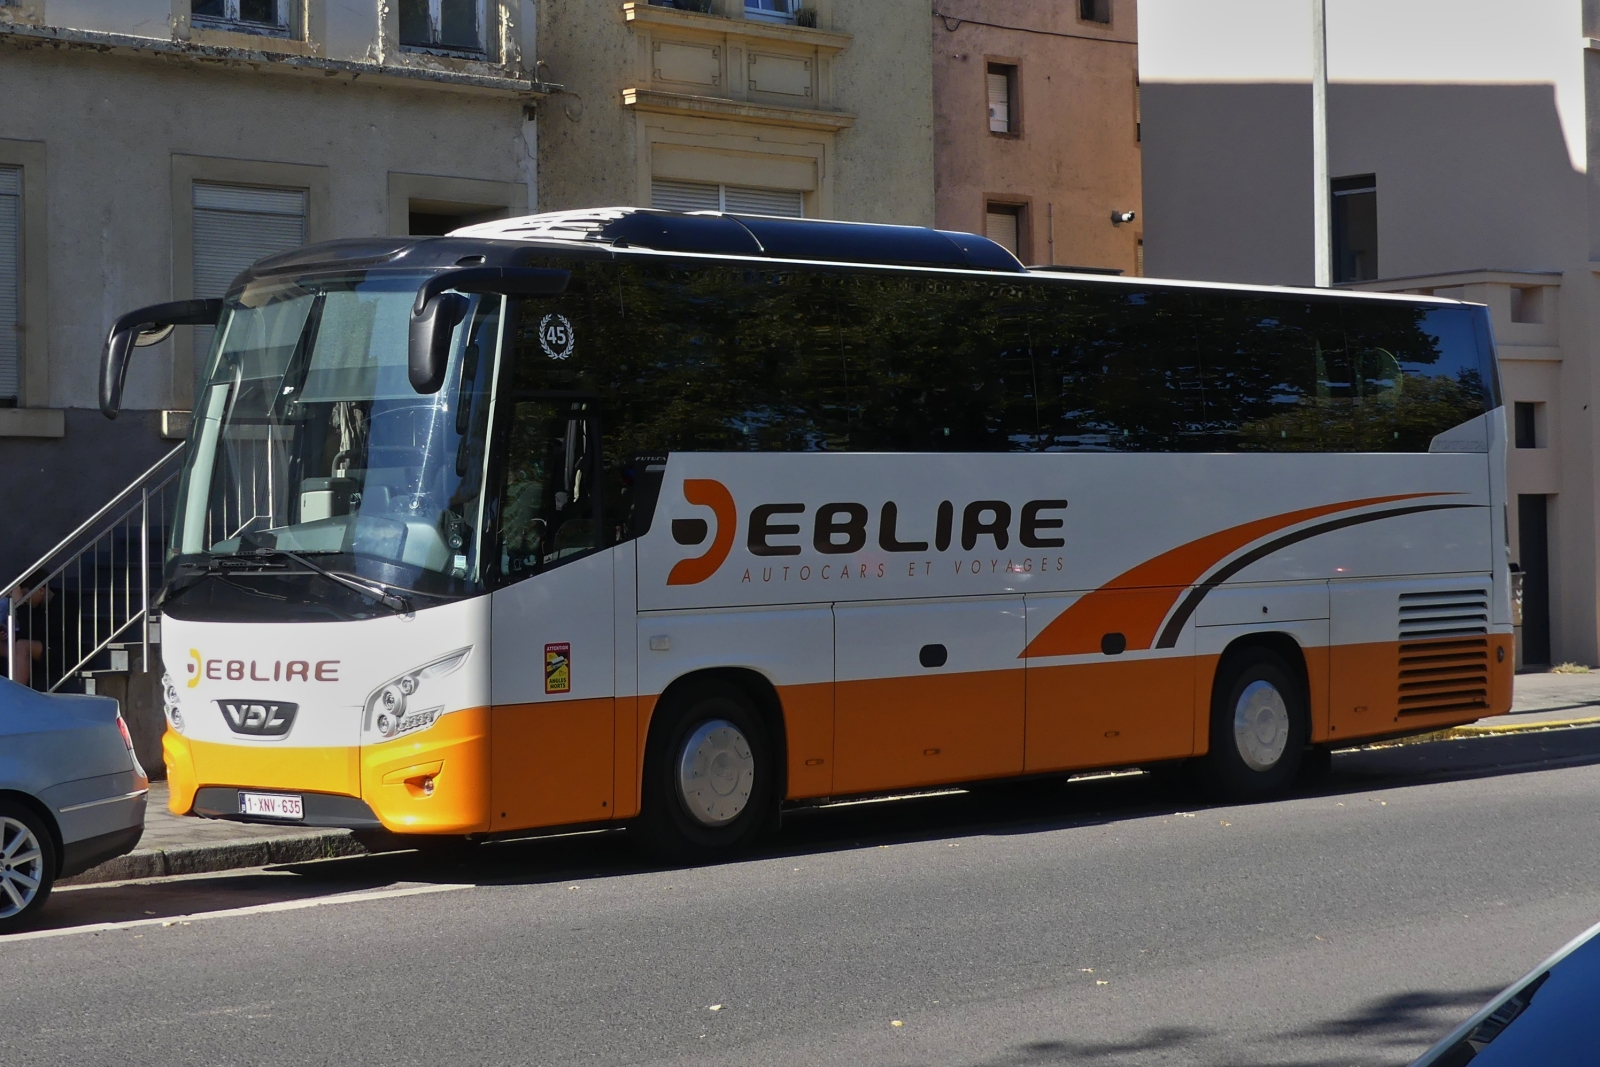 1-XNV-635, VDL Futura, von Busreisen Deblire aus Yvoir in Belgien, gesehen am Straßenrand in Remich. 09.2023 